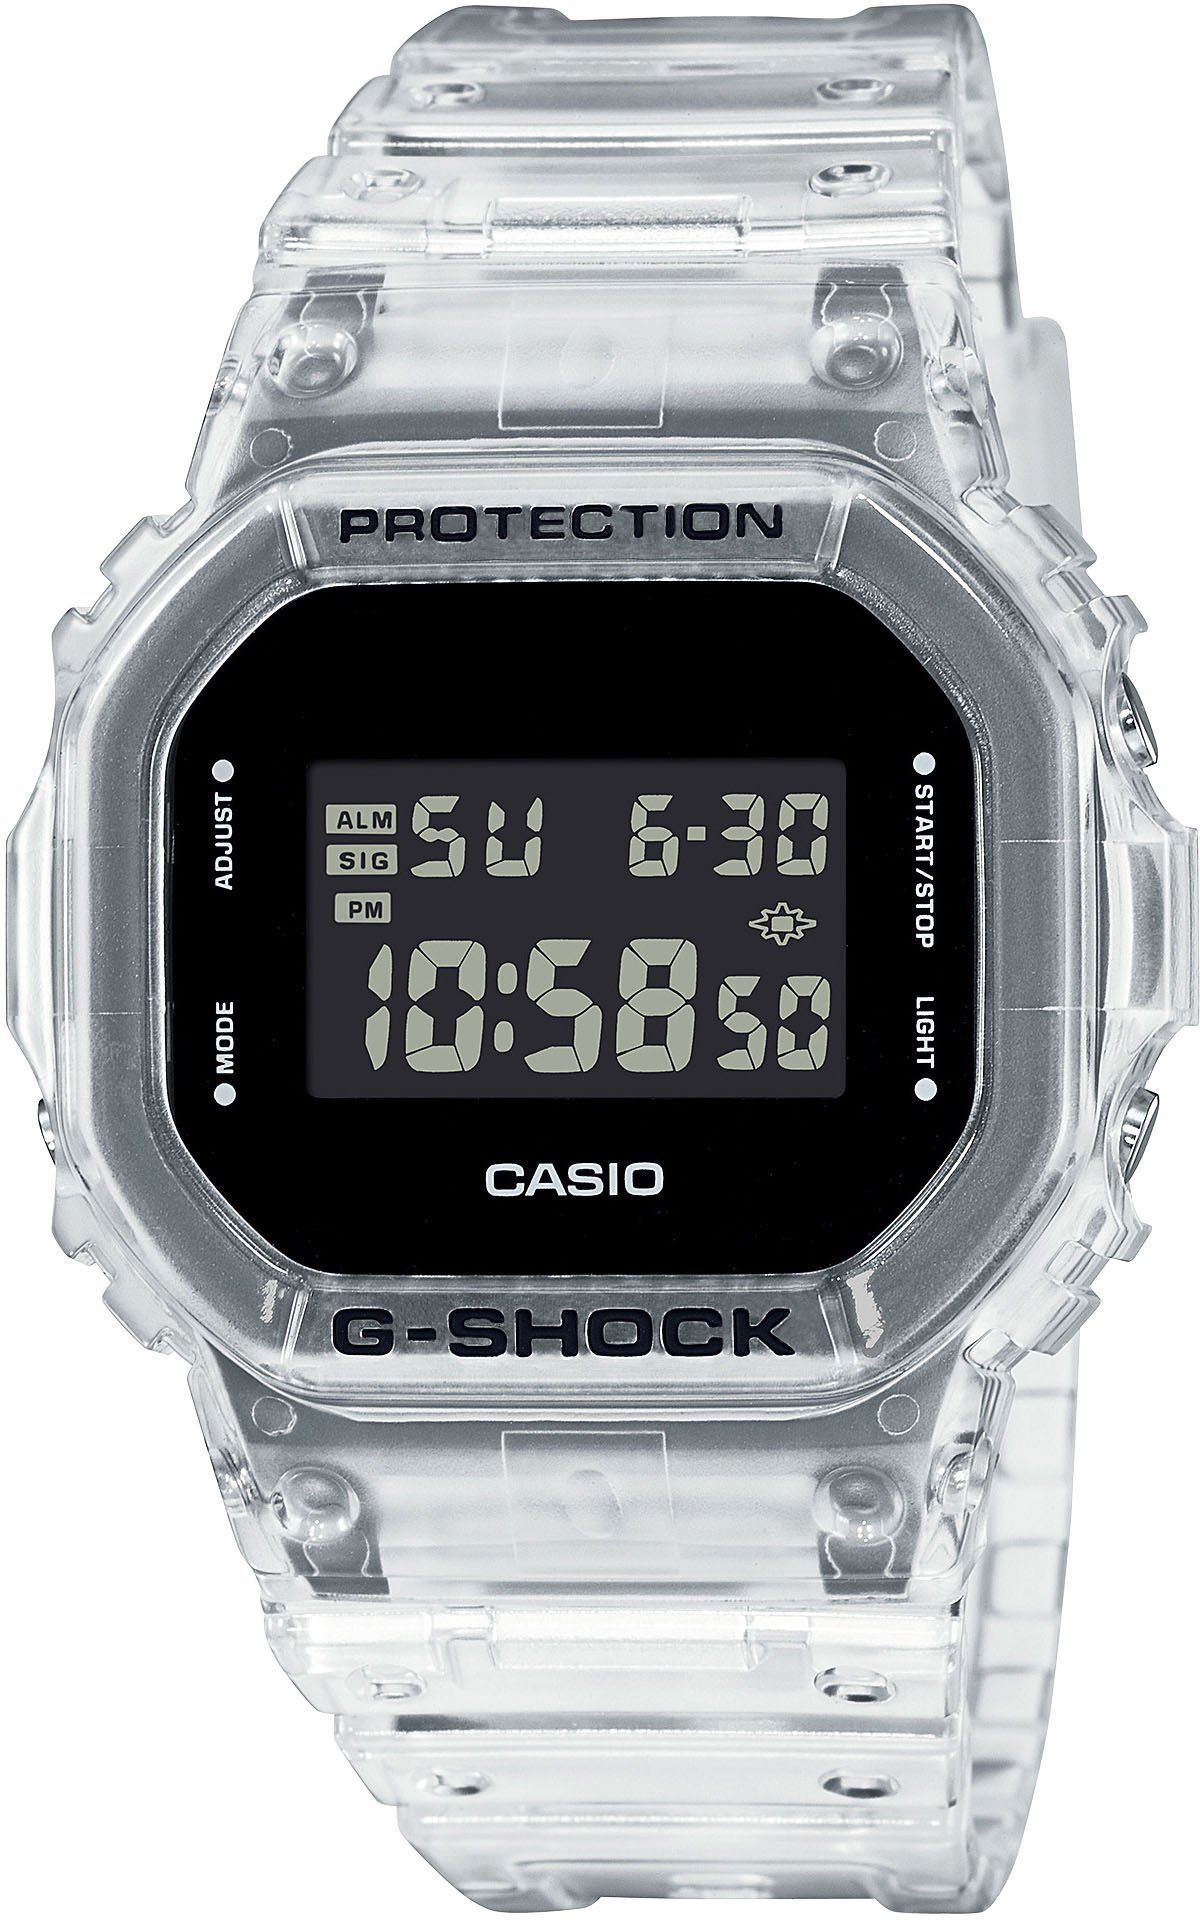 CASIO G-SHOCK Chronograph DW-5600SKE-7ER